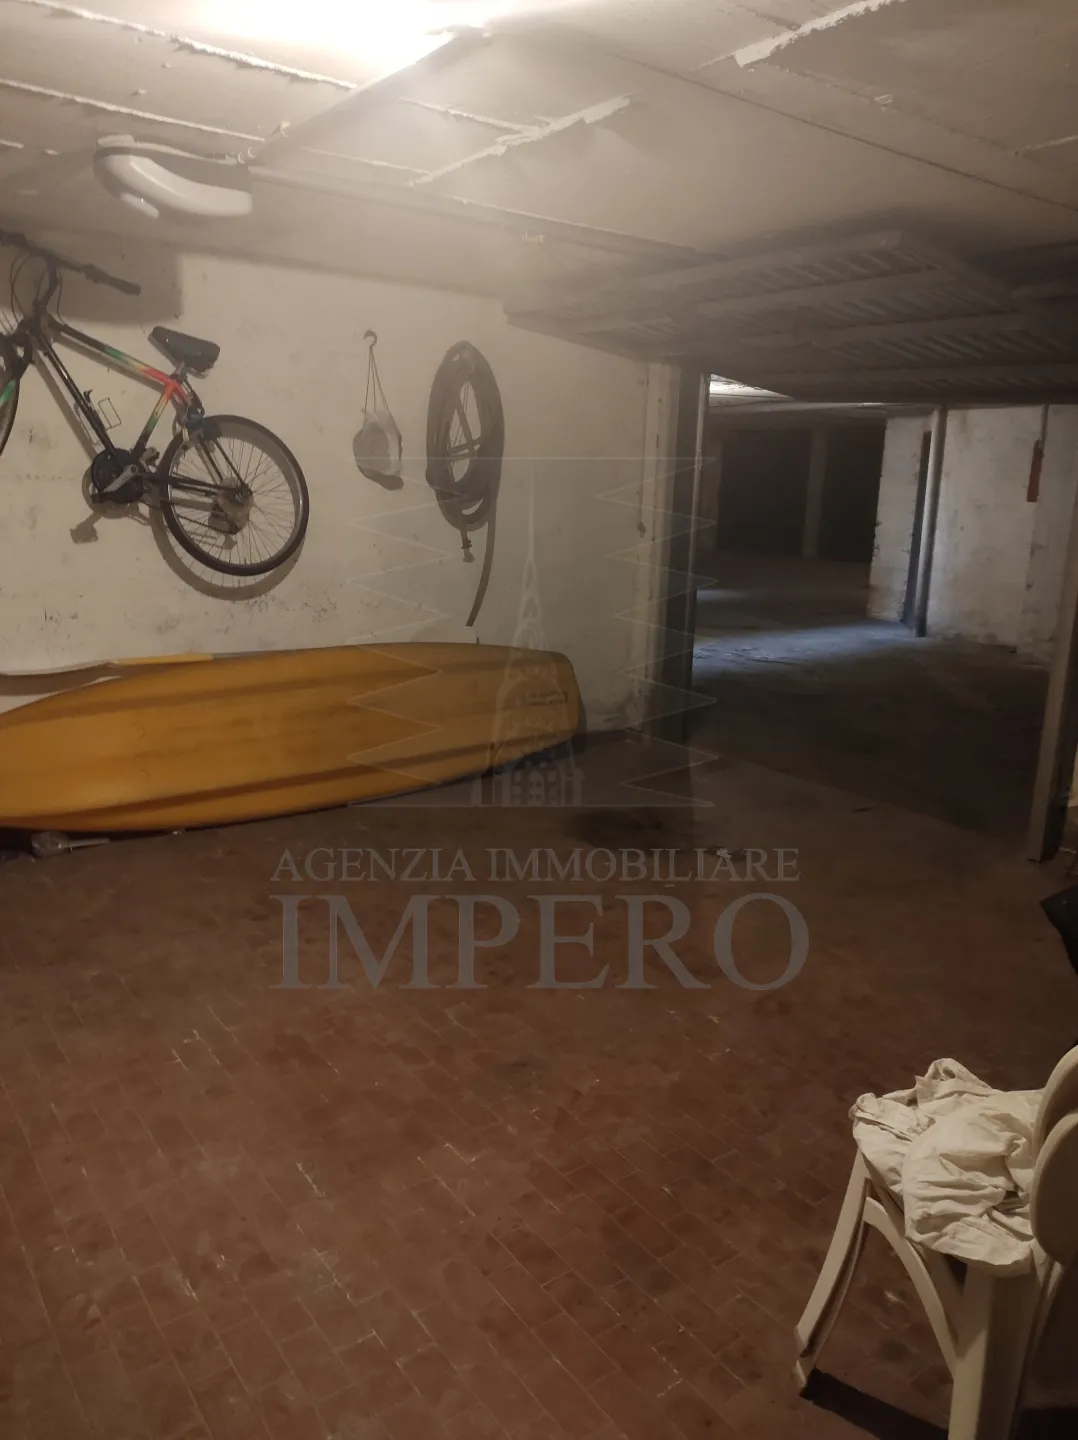 Immagine per Garage Singolo in vendita a Ventimiglia via Passeggiata Trento Trieste 11